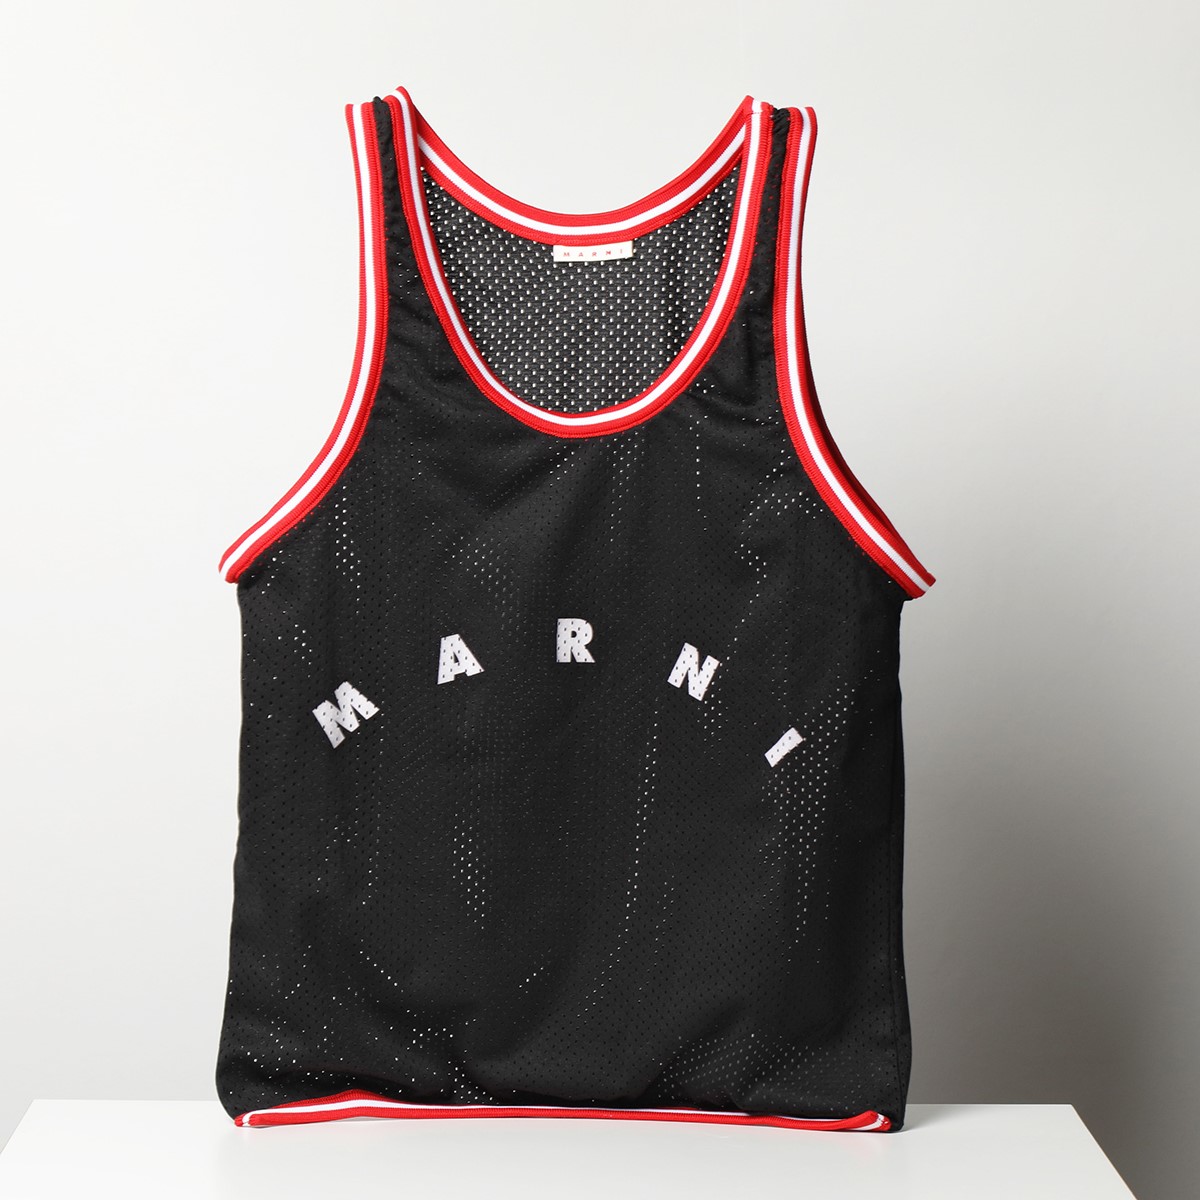 MARNI マルニ トートバッグ SHMQ0036A0 P4561 レディース バスケットスタイル タンクトップ型 ショッピングバッグ メッシュ ロゴ  エコバッグ 鞄 カラー3色 | インポートセレクト musee